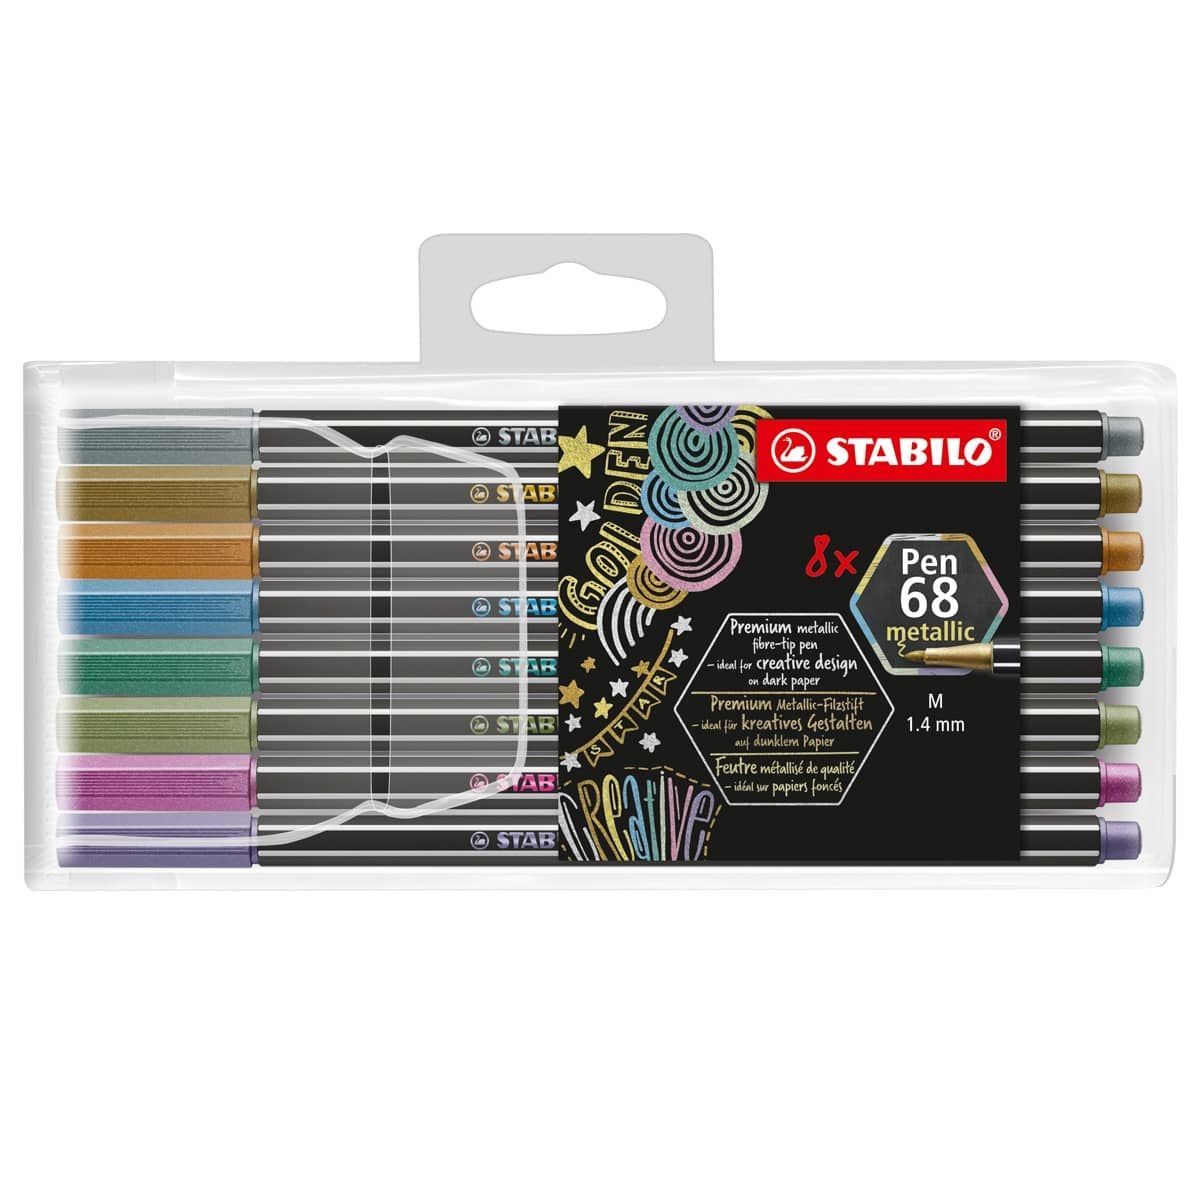 Stabilo Pen 68 Wallet Set of 8 Metallic Colors